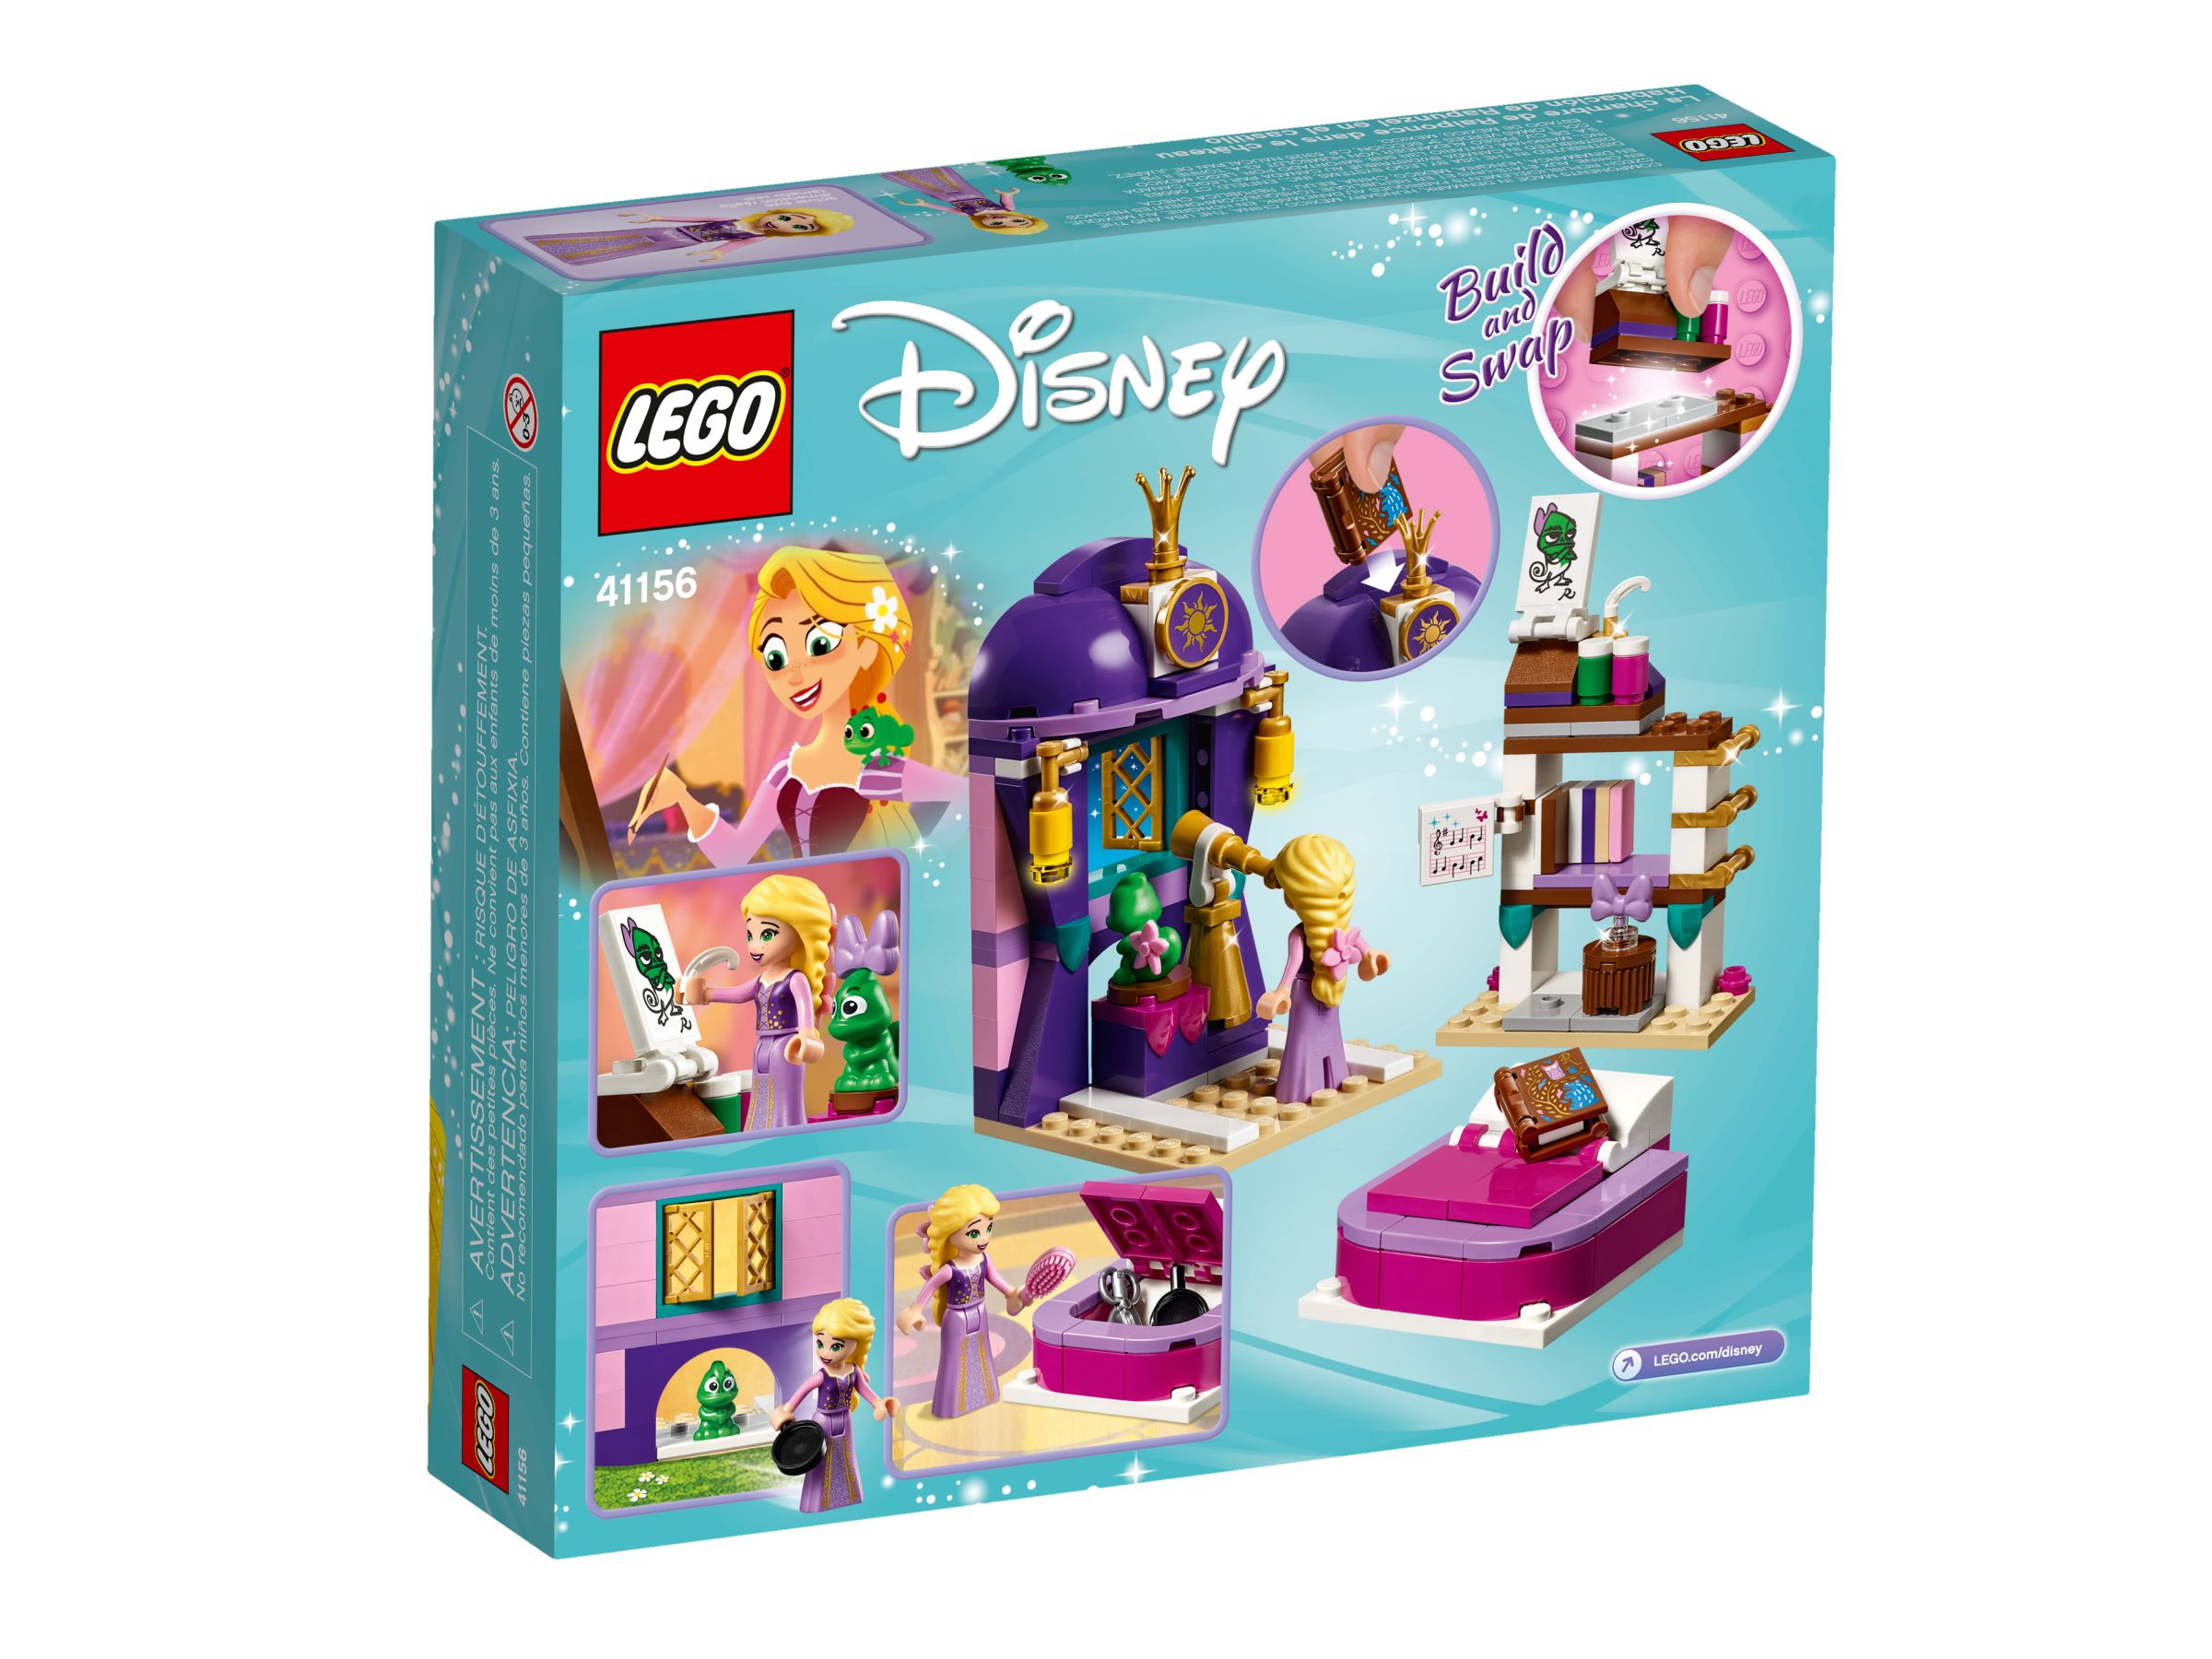 LEGO Disney 41156 Rapunzels Schlafgemach LEGO_41156_alt4.jpg